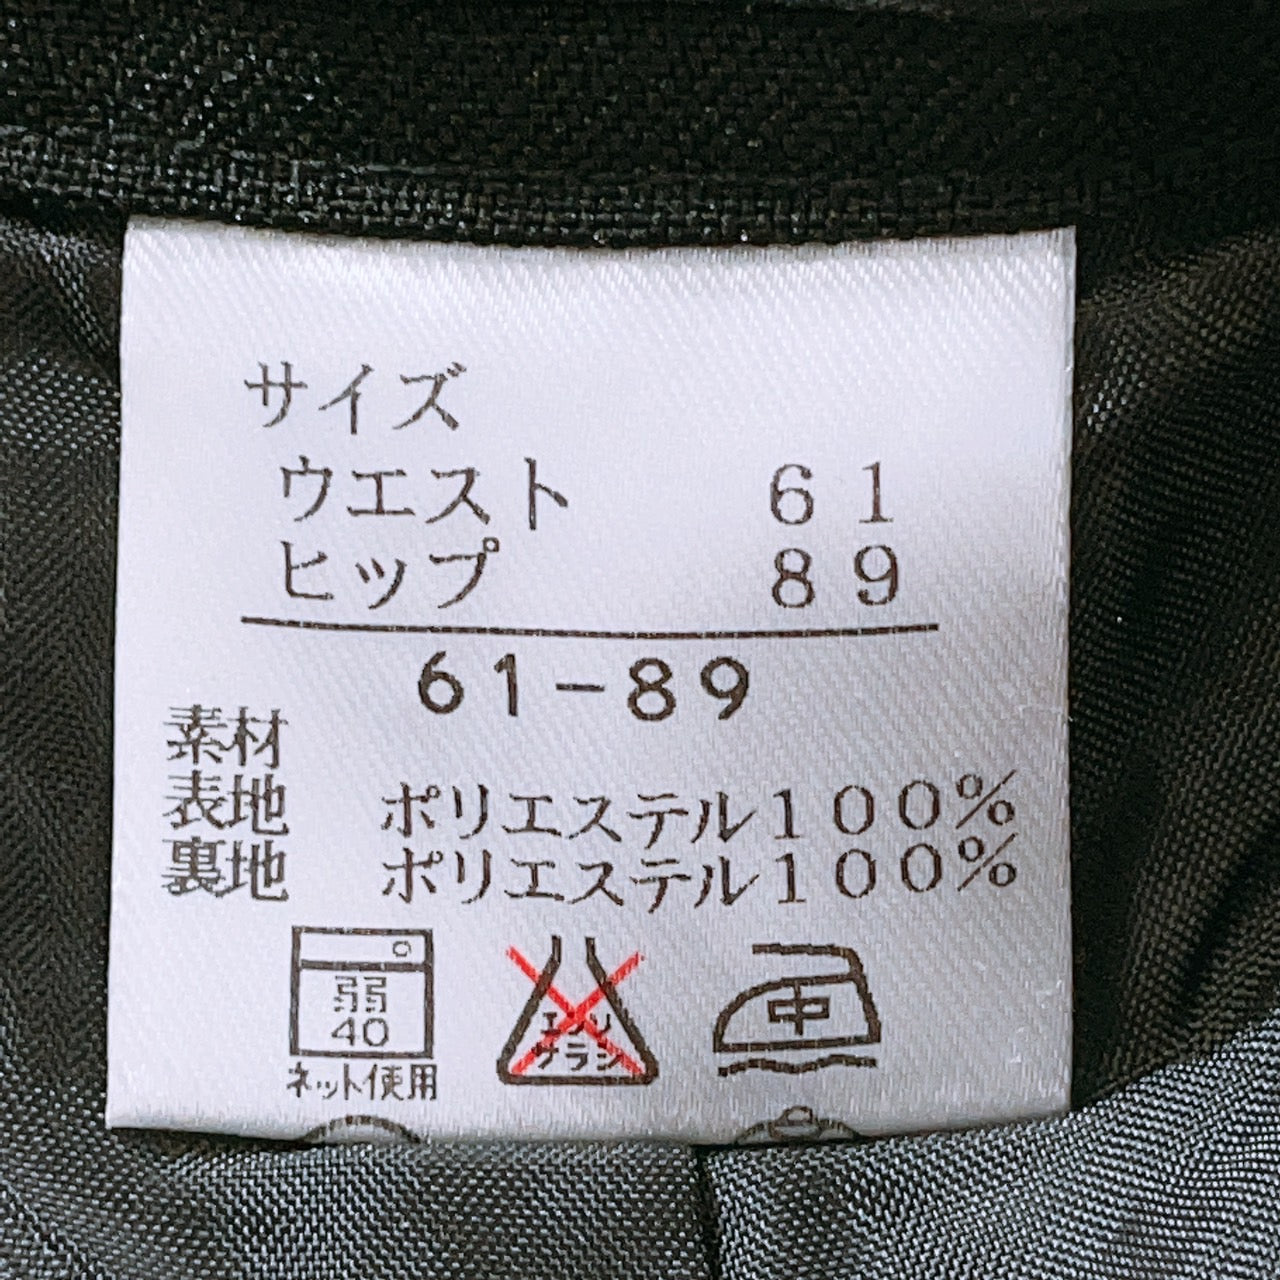 【25437】 キュロットスカート サイズ61-89 / 約S ブラック 全日本婦人子供服工業組合連合会 ショート丈 シンプルデザイン  レディース